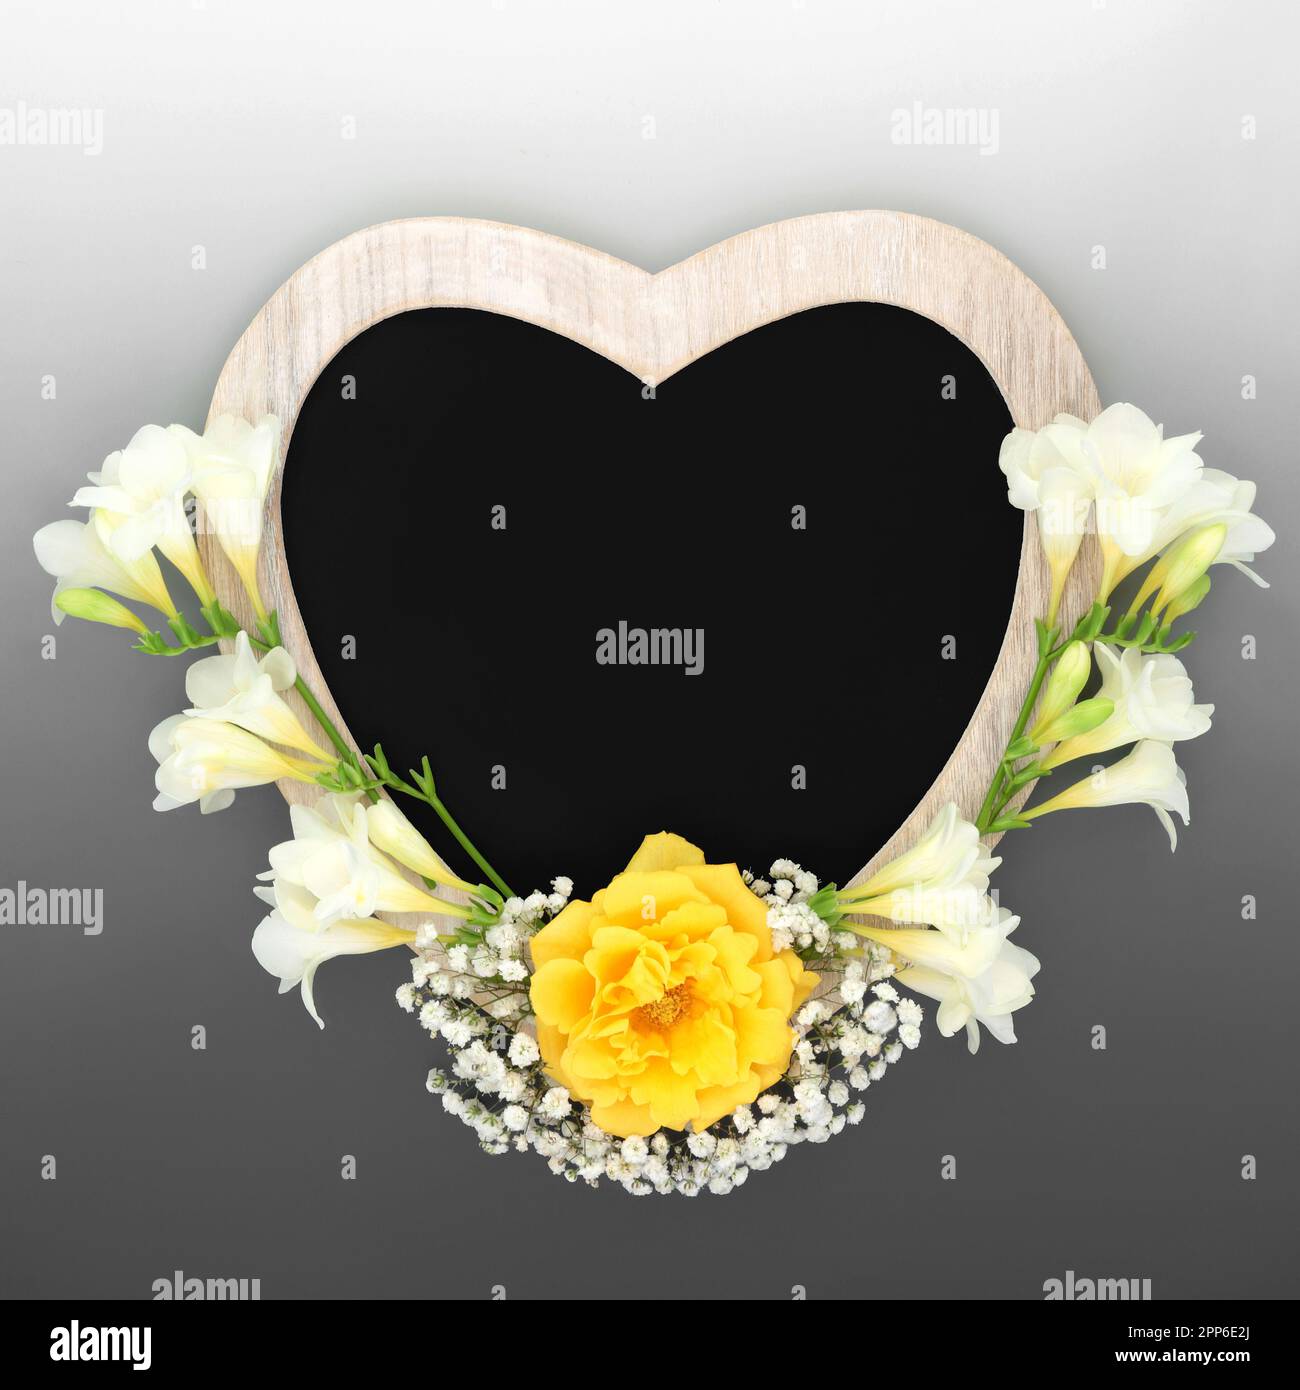 Struttura rustica in legno a forma di cuore con lavagna e fiori. Adatto per card in Memoriam, invito funerale, lutto, concetto RIP. Foto Stock